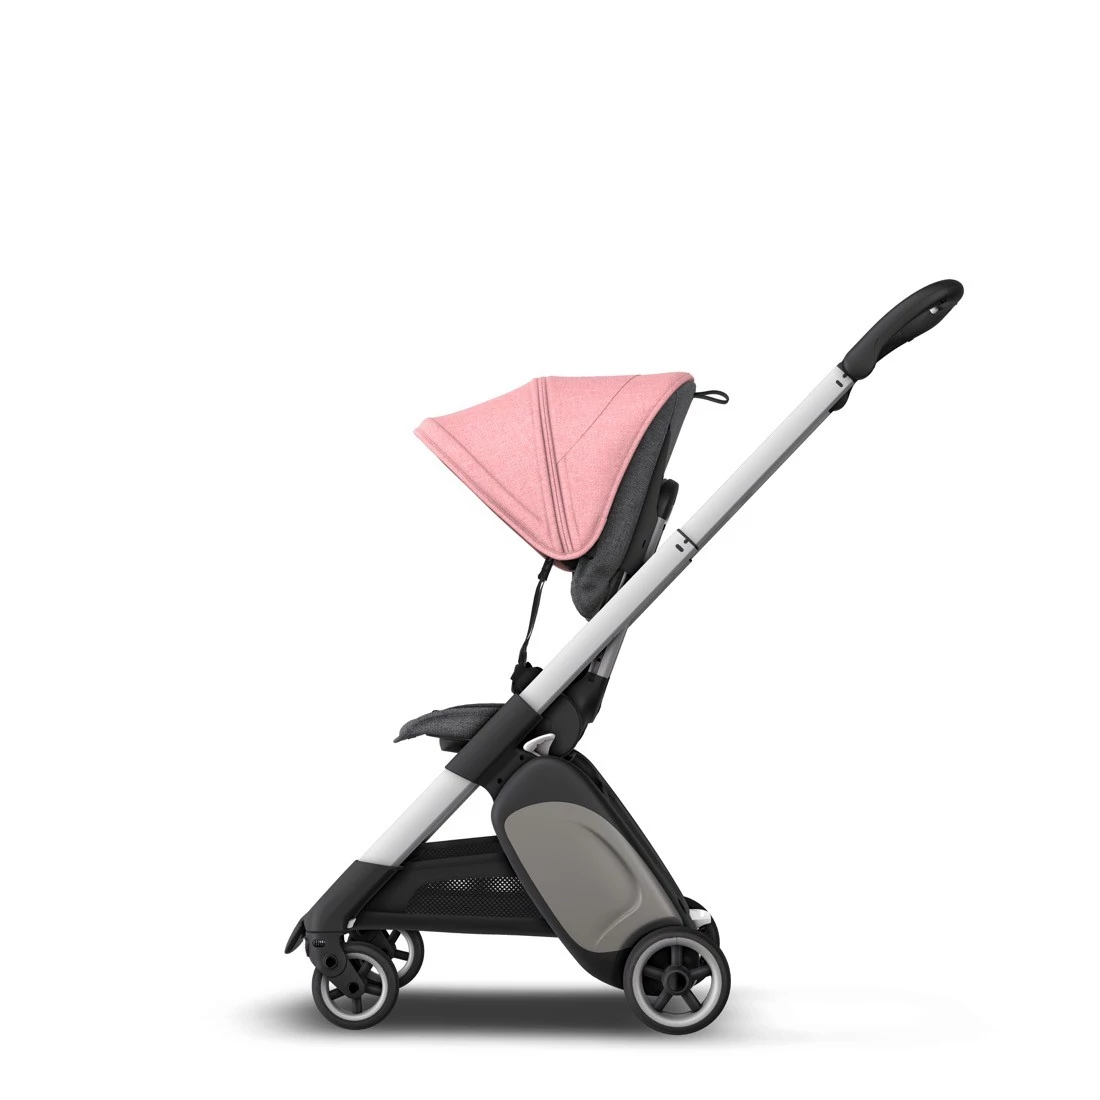 Компактную прогулочную коляску Bugaboo Ant Alu / Grey Melange-Pink Melange можно купить на серебристой раме с ярким розовым капором